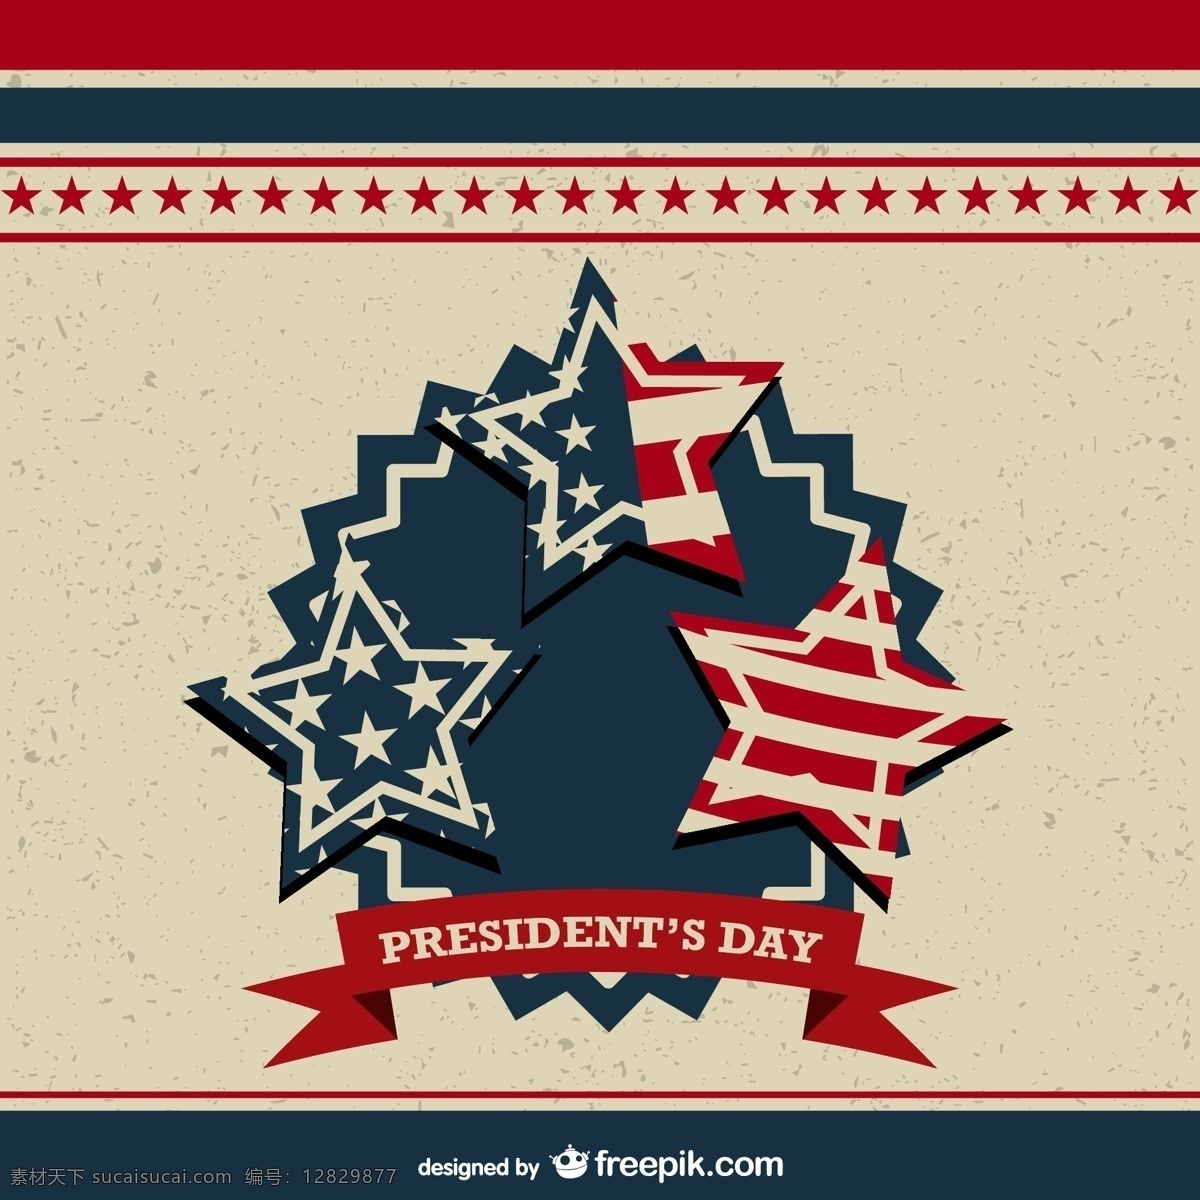 总统 时代 背景 下 美国 国旗 复古 明星 丝带 徽章 模板 壁纸 图形 布局 平面设计 事件 元素 标志 插图 设计元素 独立日 黄色